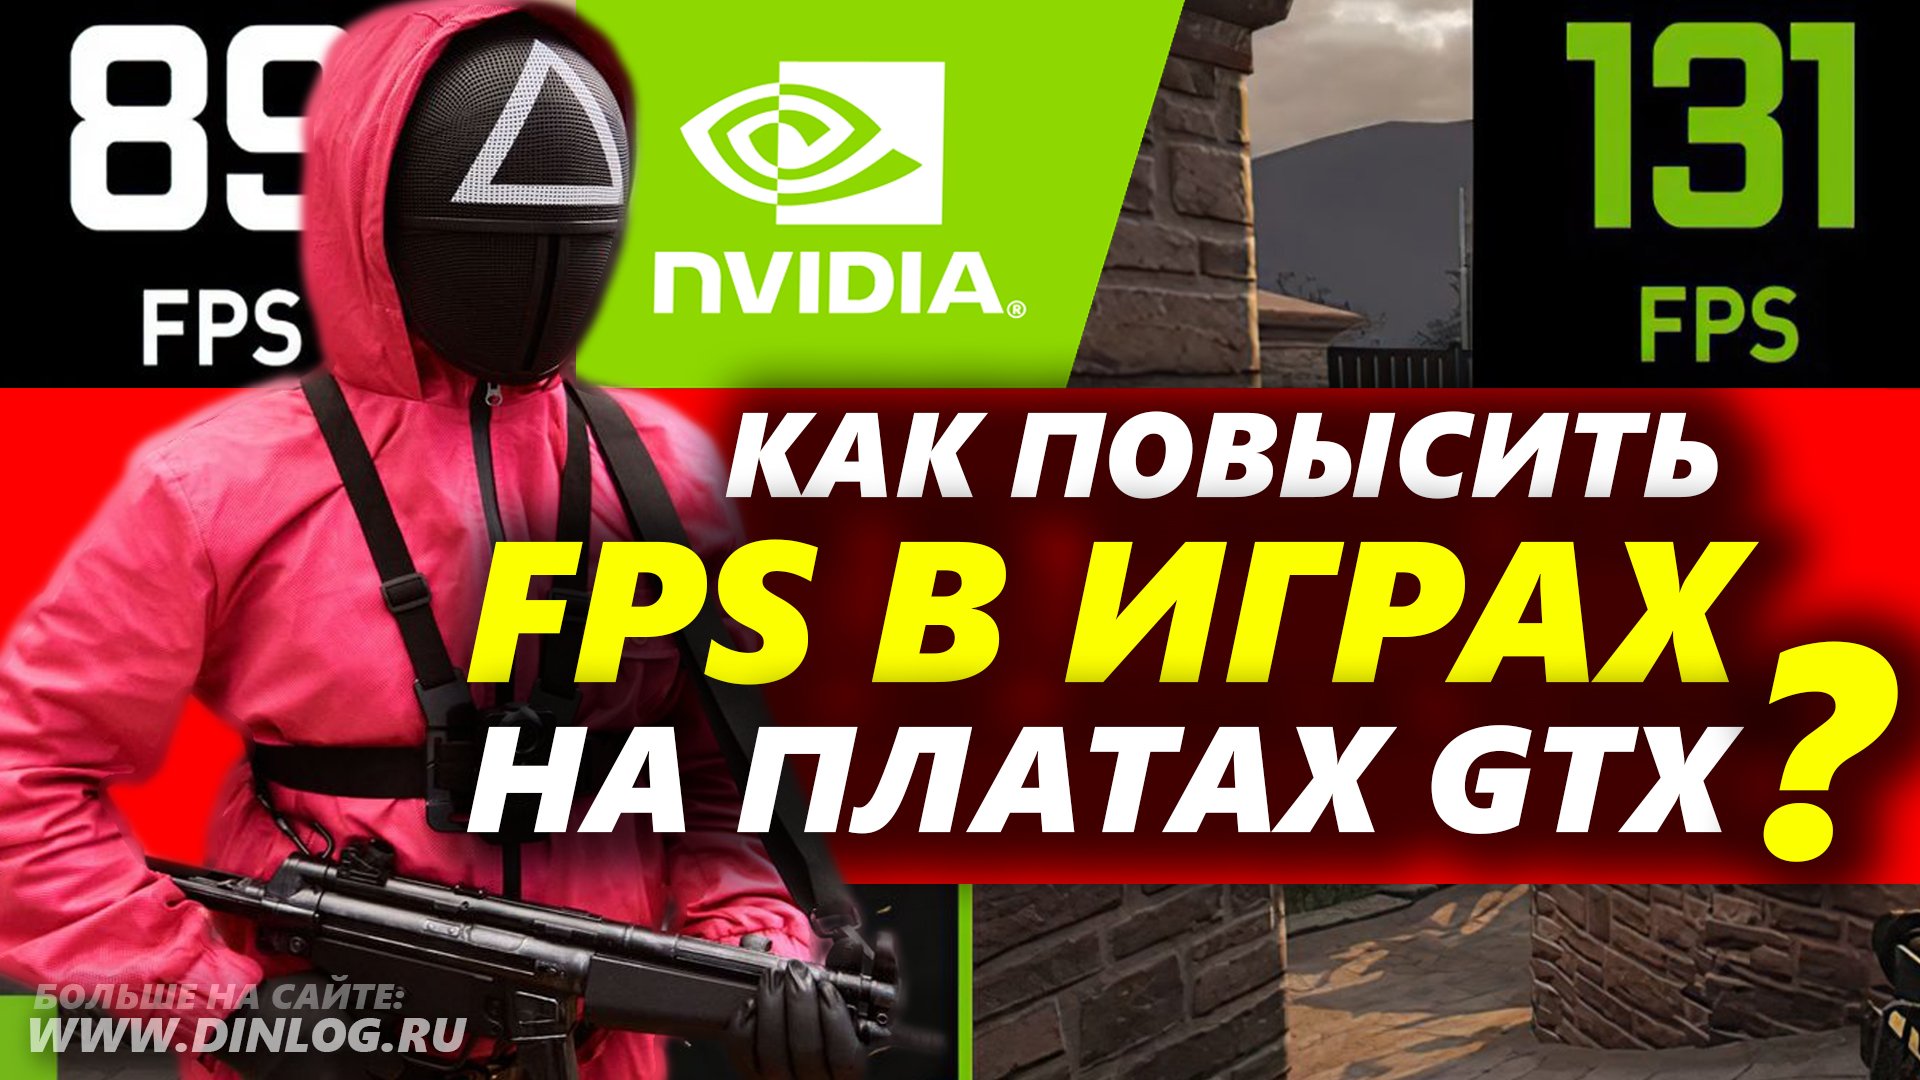 Как включить NIS (Nvidia Image Scaling) для повышения FPS в играх?